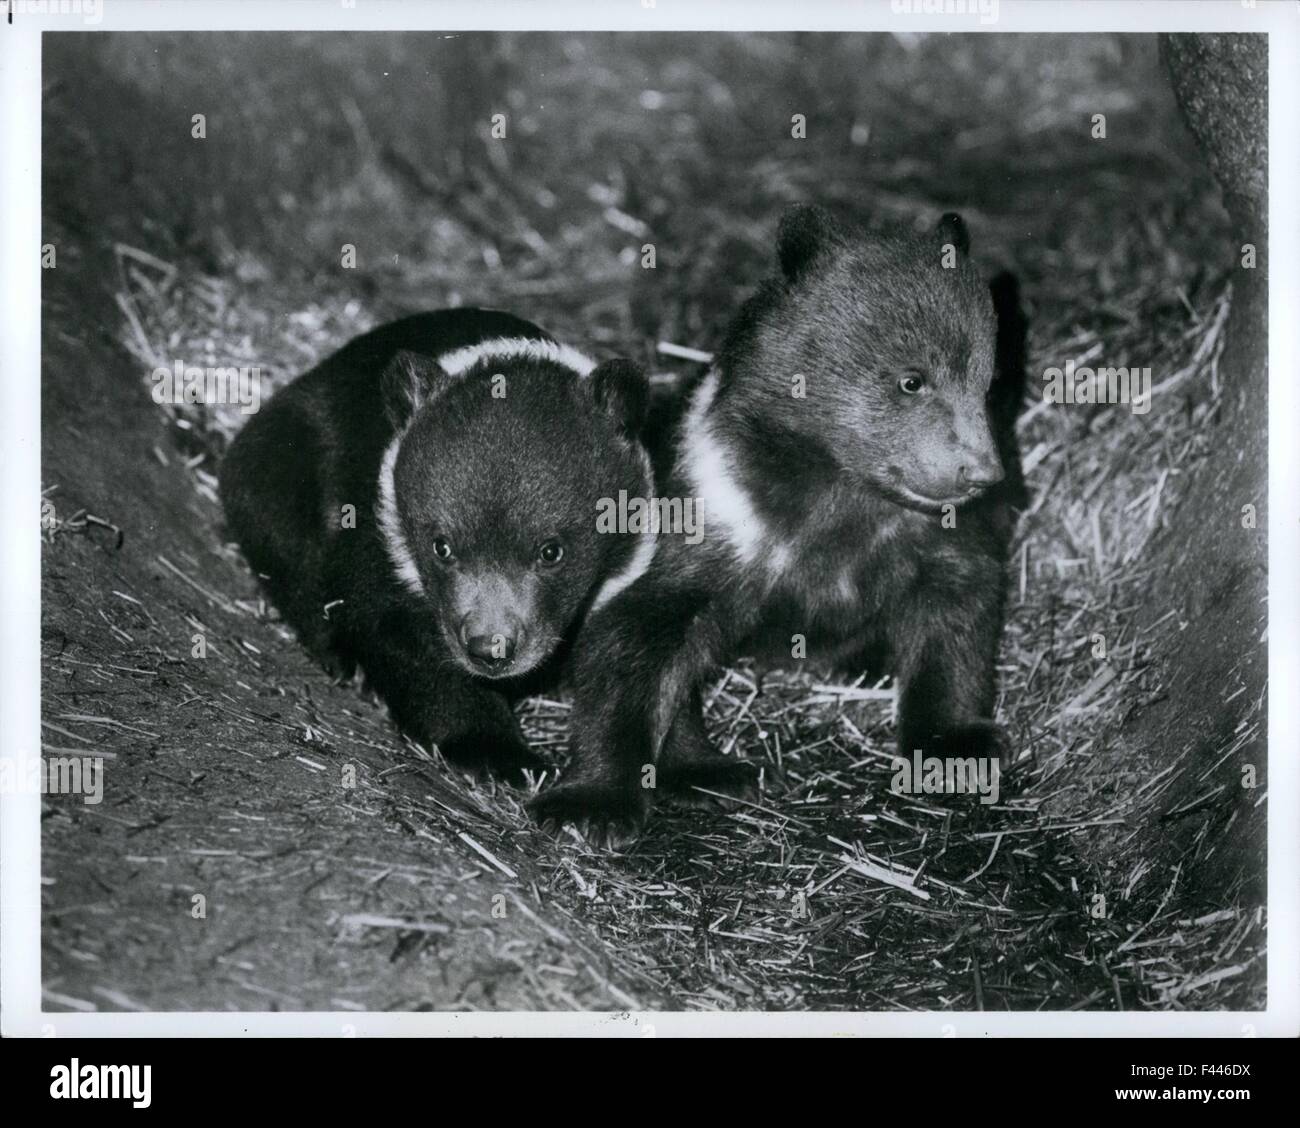 10. Januar 1974 - Bronx, NY - The Bronx Zoo zwei Kodiak Bärenjungen erkunden die private Höhle, die sie mit ihrer Mutter, Cleo teilen. Die jungen Feb.2 geboren sind, dass Cleo den ersten. Sie verlieren ihre weißen Kragen, wie sie Reifen, Umstellung auf die einheitliche braune von Erwachsenen Kodiakbären. Kodiakbären Alaskas Kodiak Insel, sind die größten lebenden Fleischfresser und eine Länge von neun Fuß erreichen können. Aber eine Geburt, die jungen sind winzig, unbehaart und hilflos. Mit einem Gewicht von weniger als ein Pfund, sind Neugeborene Kodiakbären, blind und unfähig, viel koordinierte Bewegung. Zoo Mammalogists sind dabei um nicht zu stören th Stockfoto